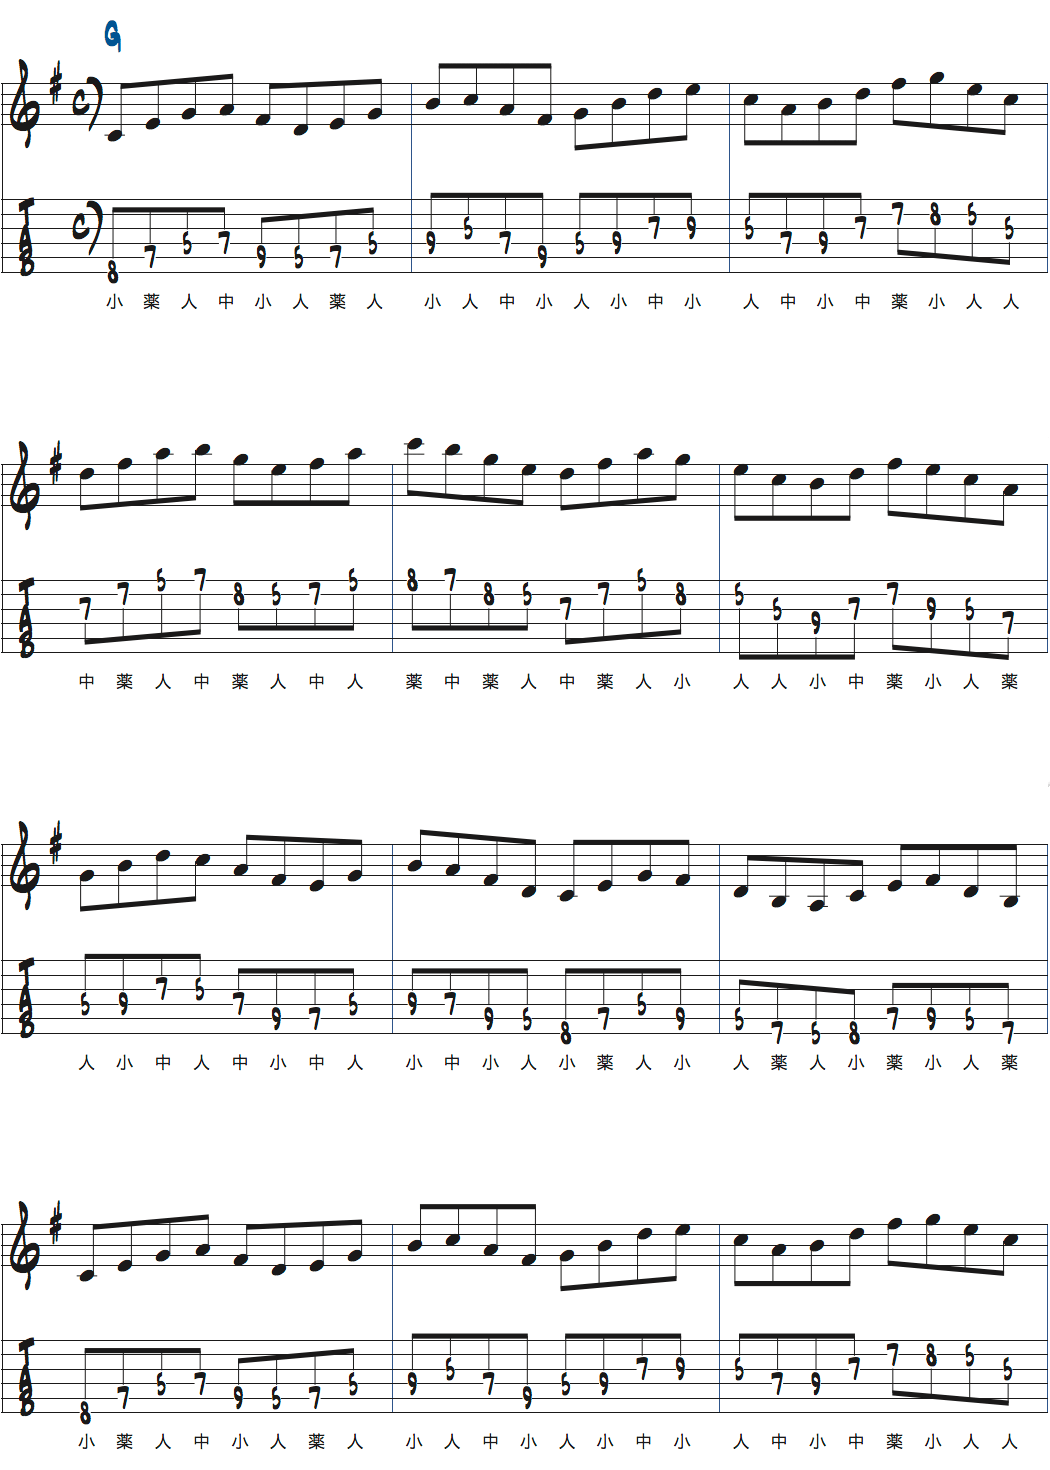 カートローゼンウィンケルのスケールウォーミングアップトライアドパターン3楽譜ページ1